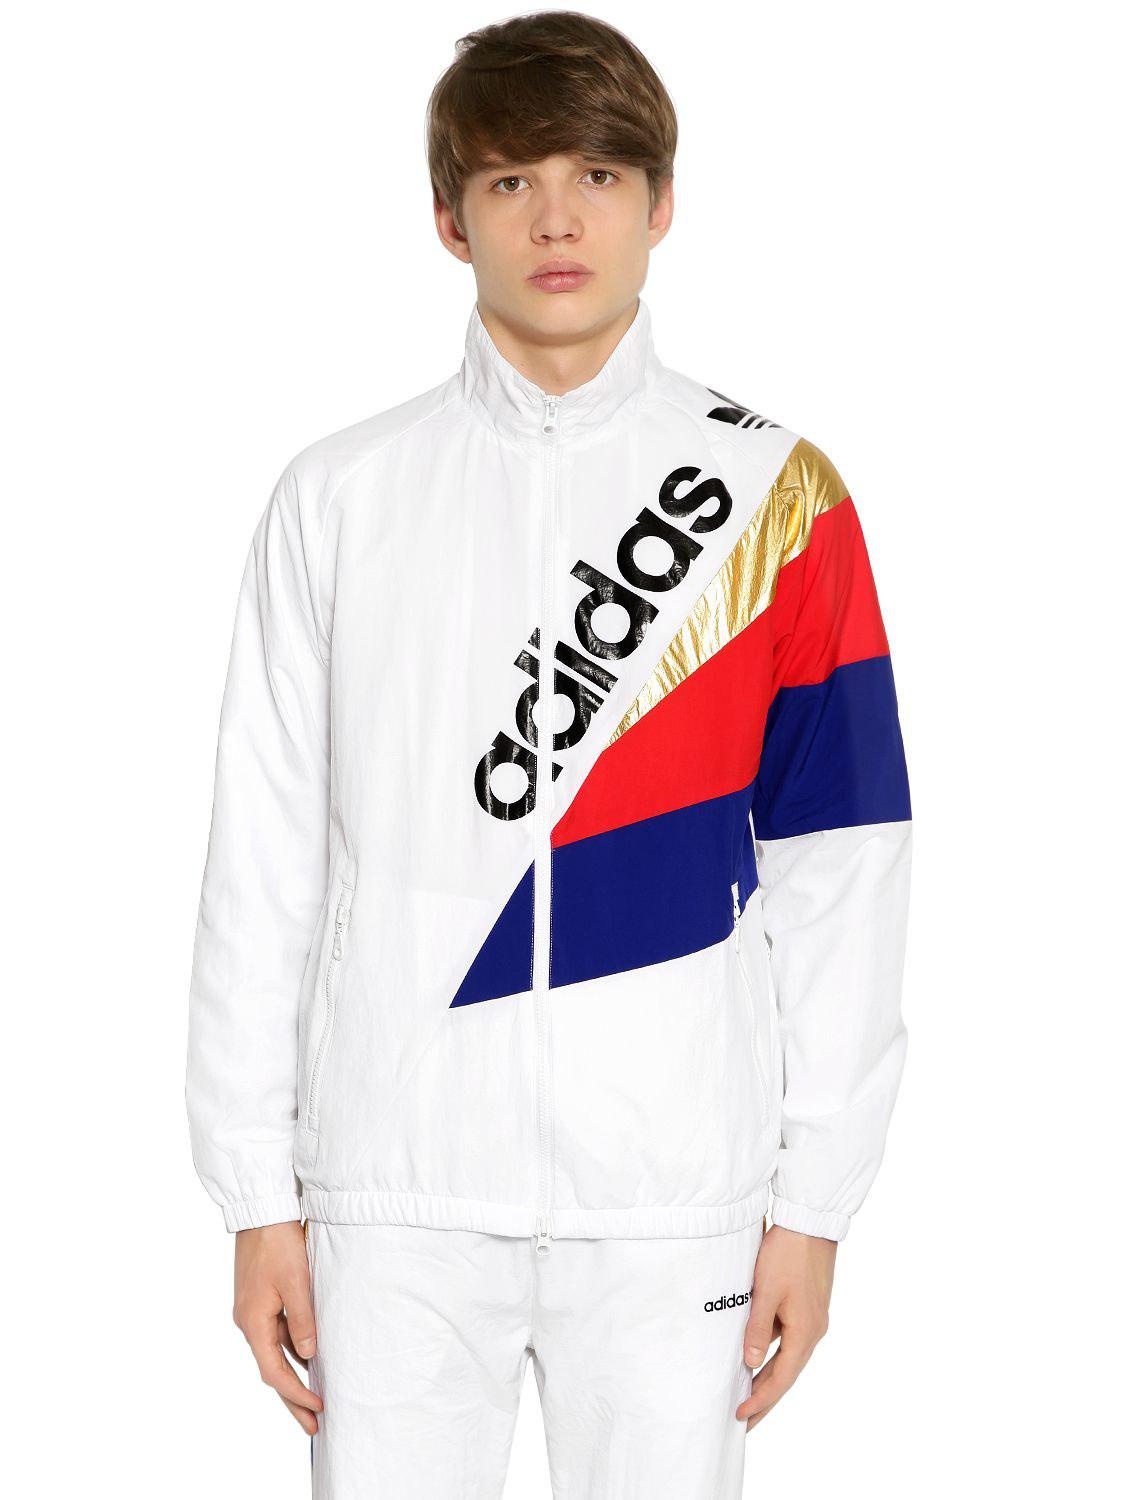 adidas tribe jacket